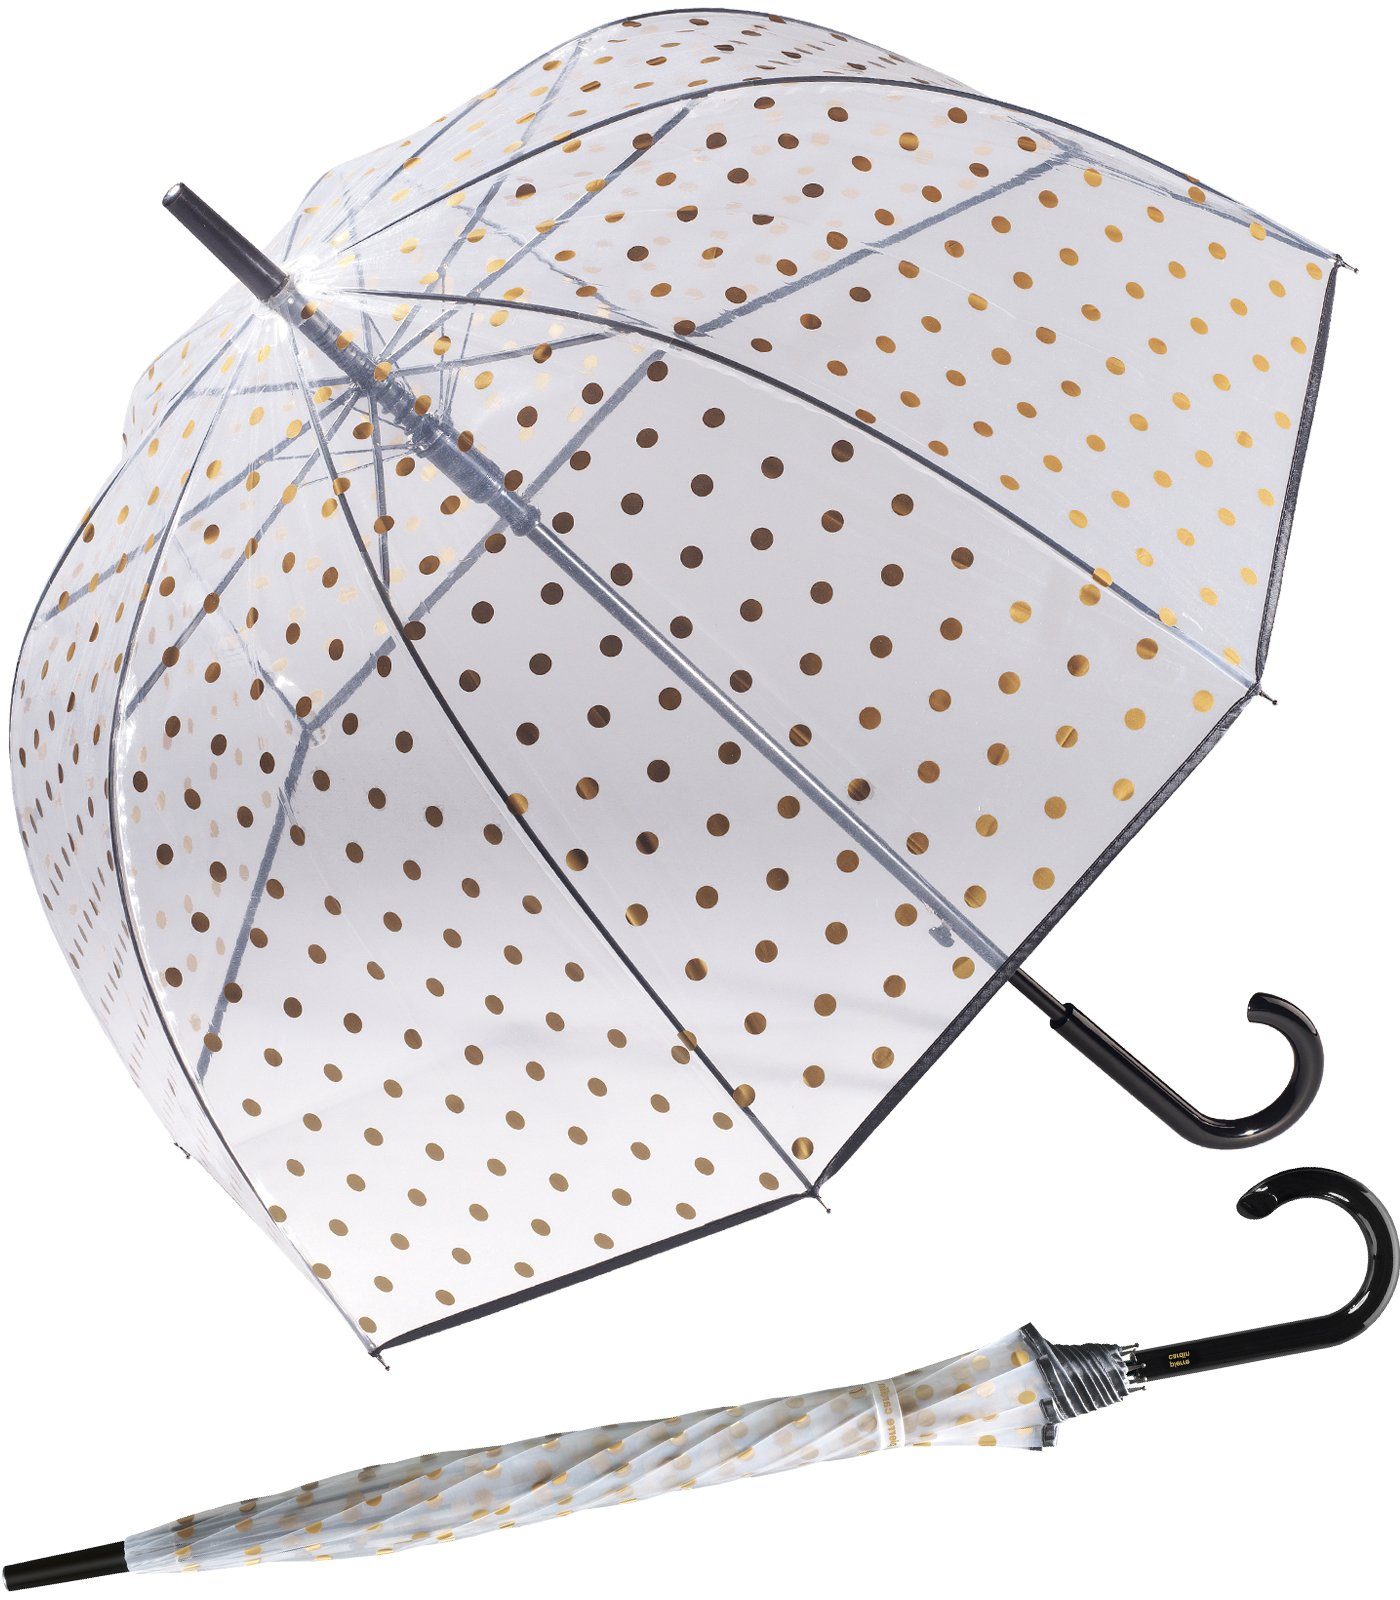 Pierre Cardin Langregenschirm Glockenschirm mit Schirm Dots gold, Automatik ein Metallic eleganter Durchblick